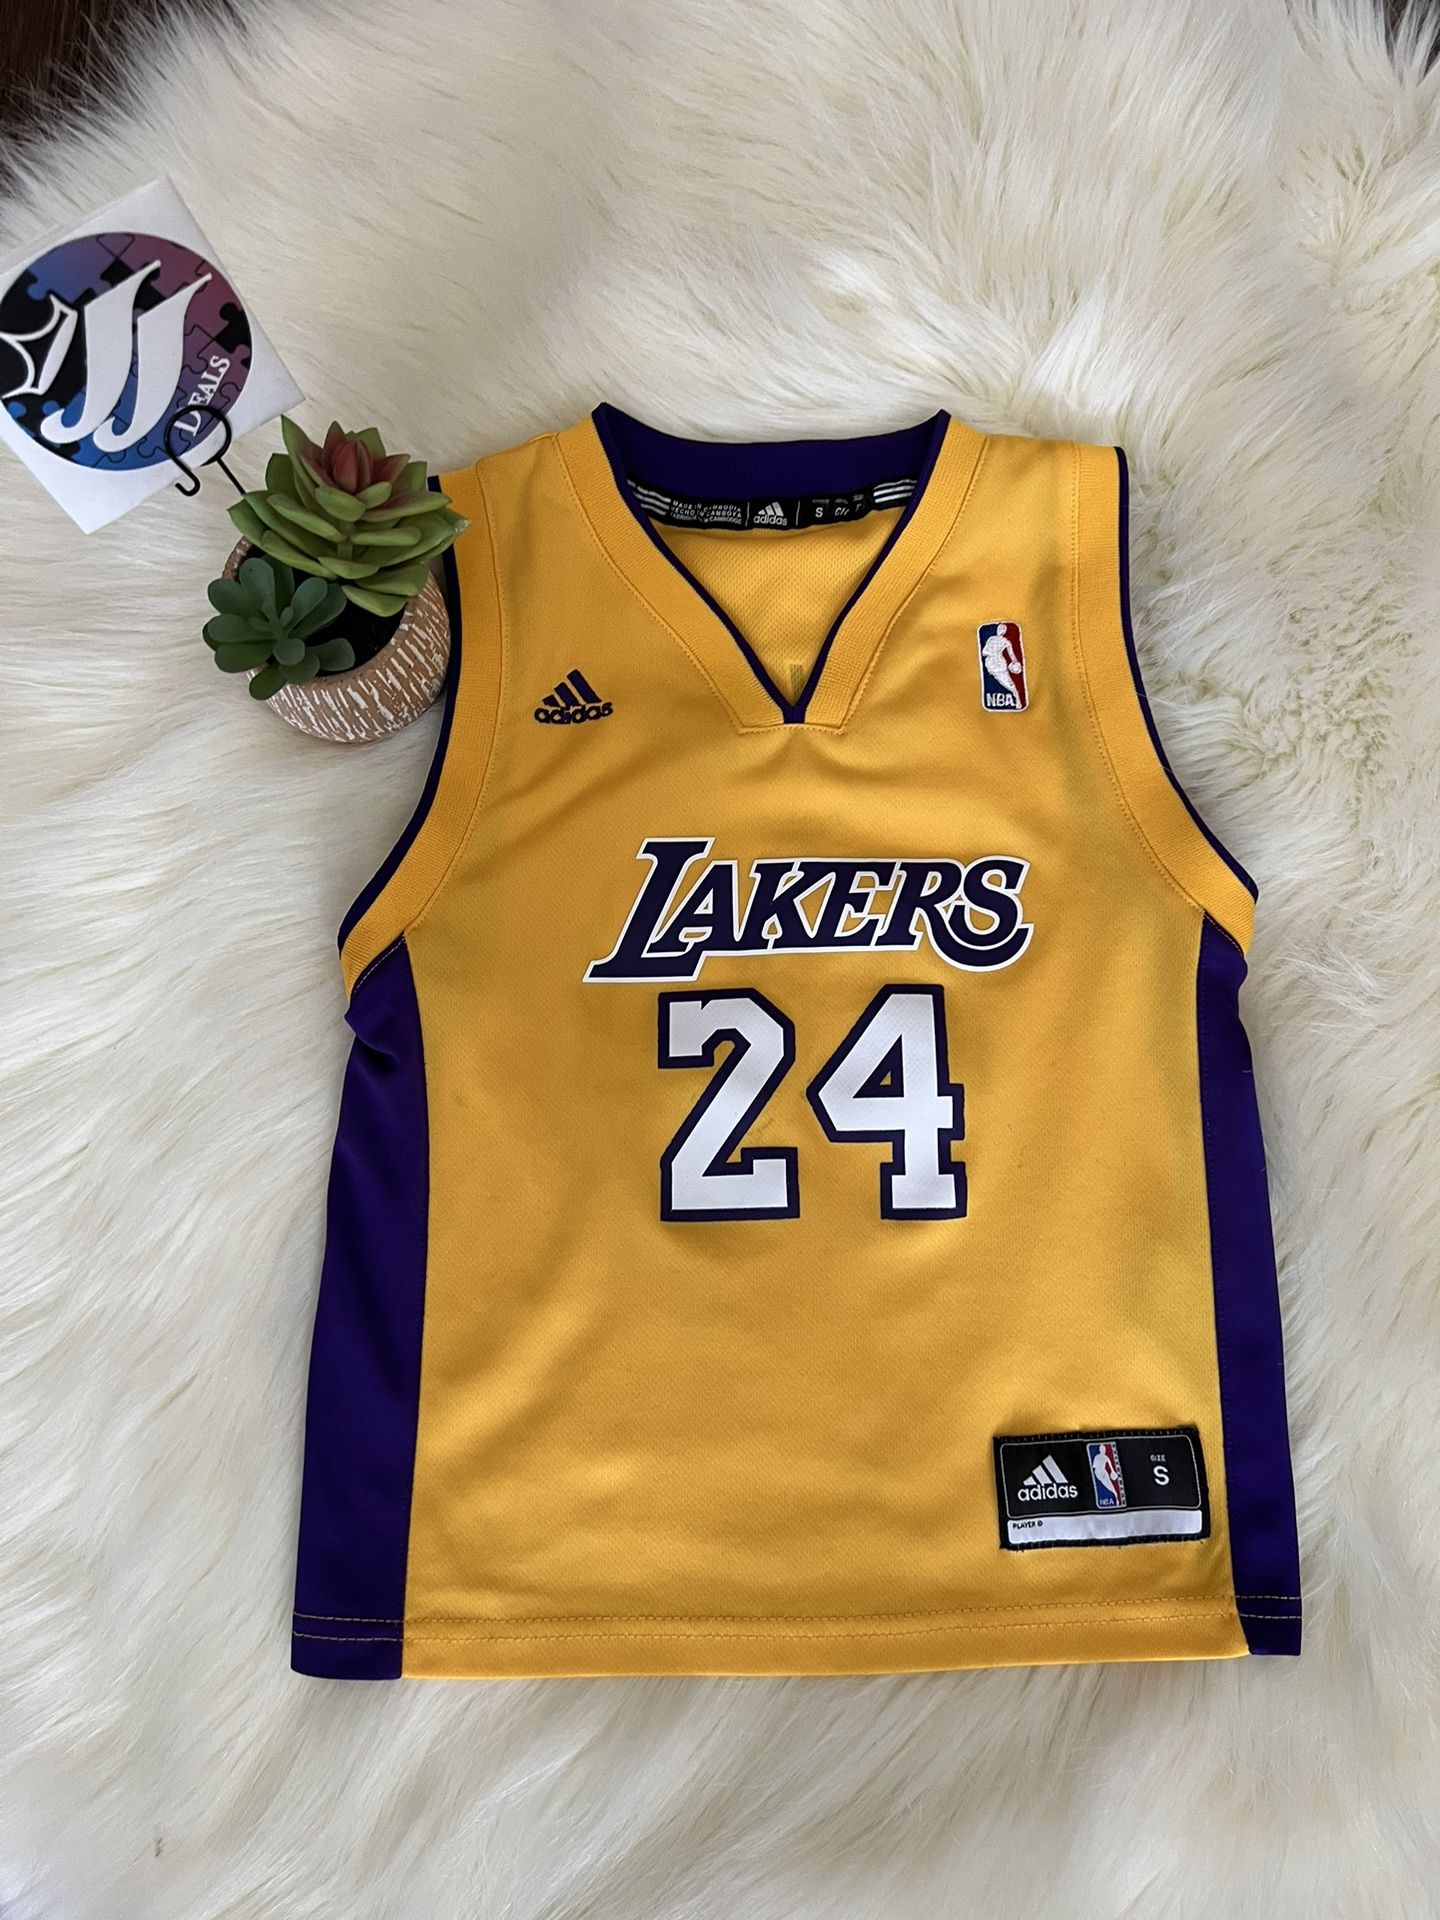 Kobe Bryant #24 Commemorative Lakers Jersey Black Mamba - Rare Basketball  Jerseys